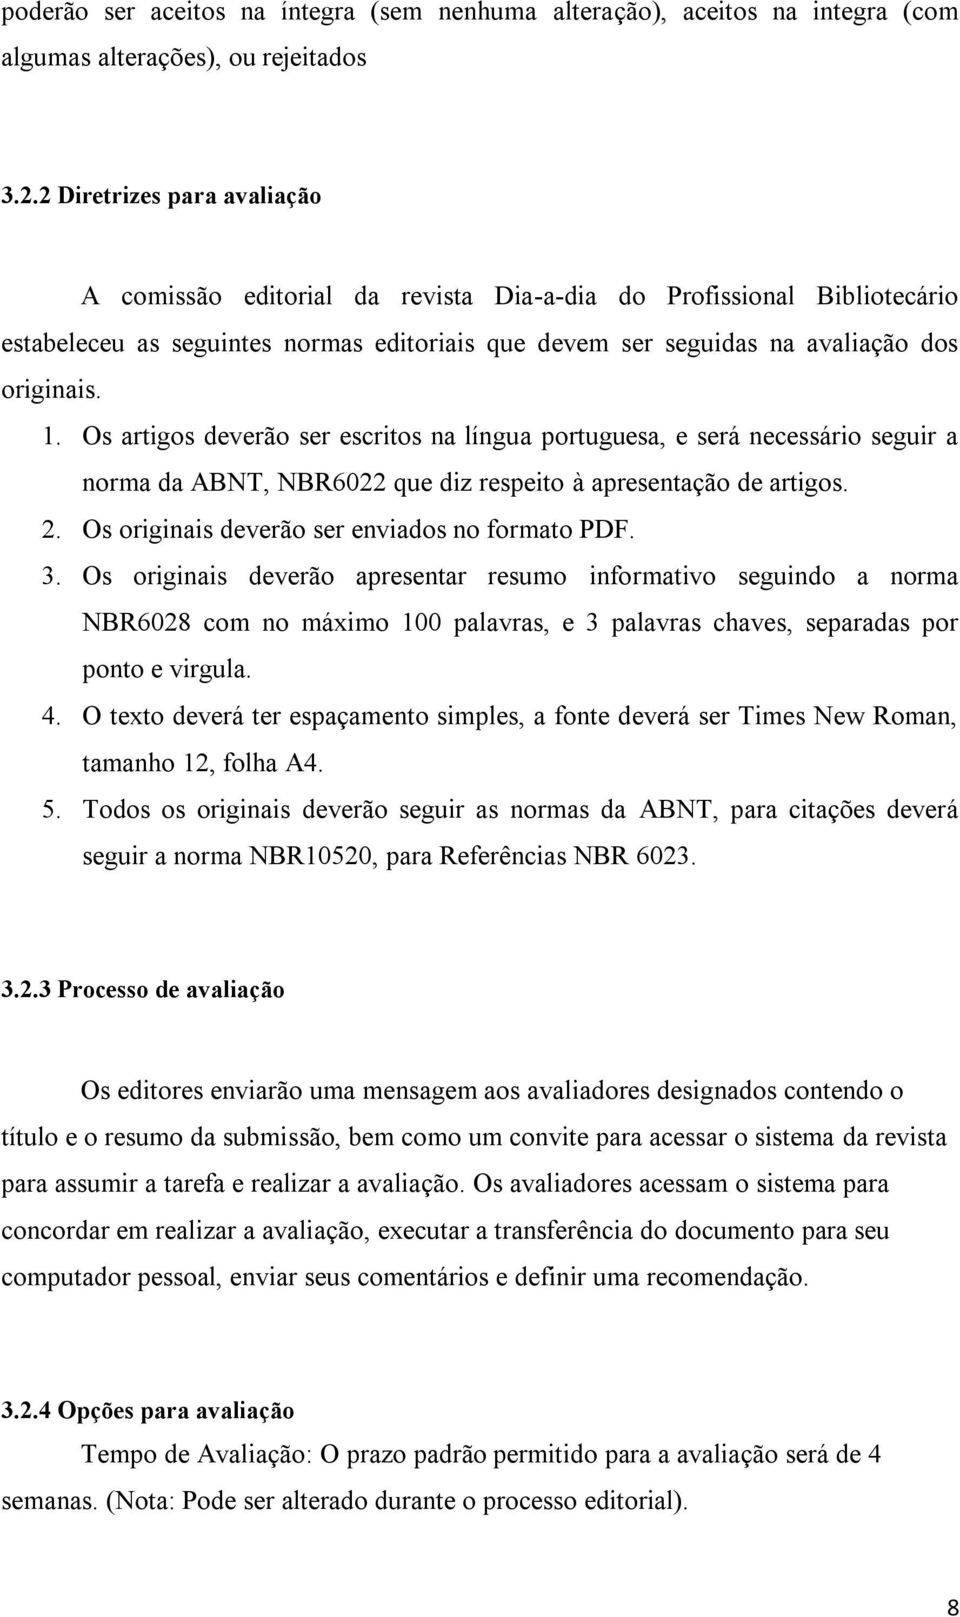 Os artigos deverão ser escritos na língua portuguesa, e será necessário seguir a norma da ABNT, NBR6022 que diz respeito à apresentação de artigos. 2. Os originais deverão ser enviados no formato PDF.